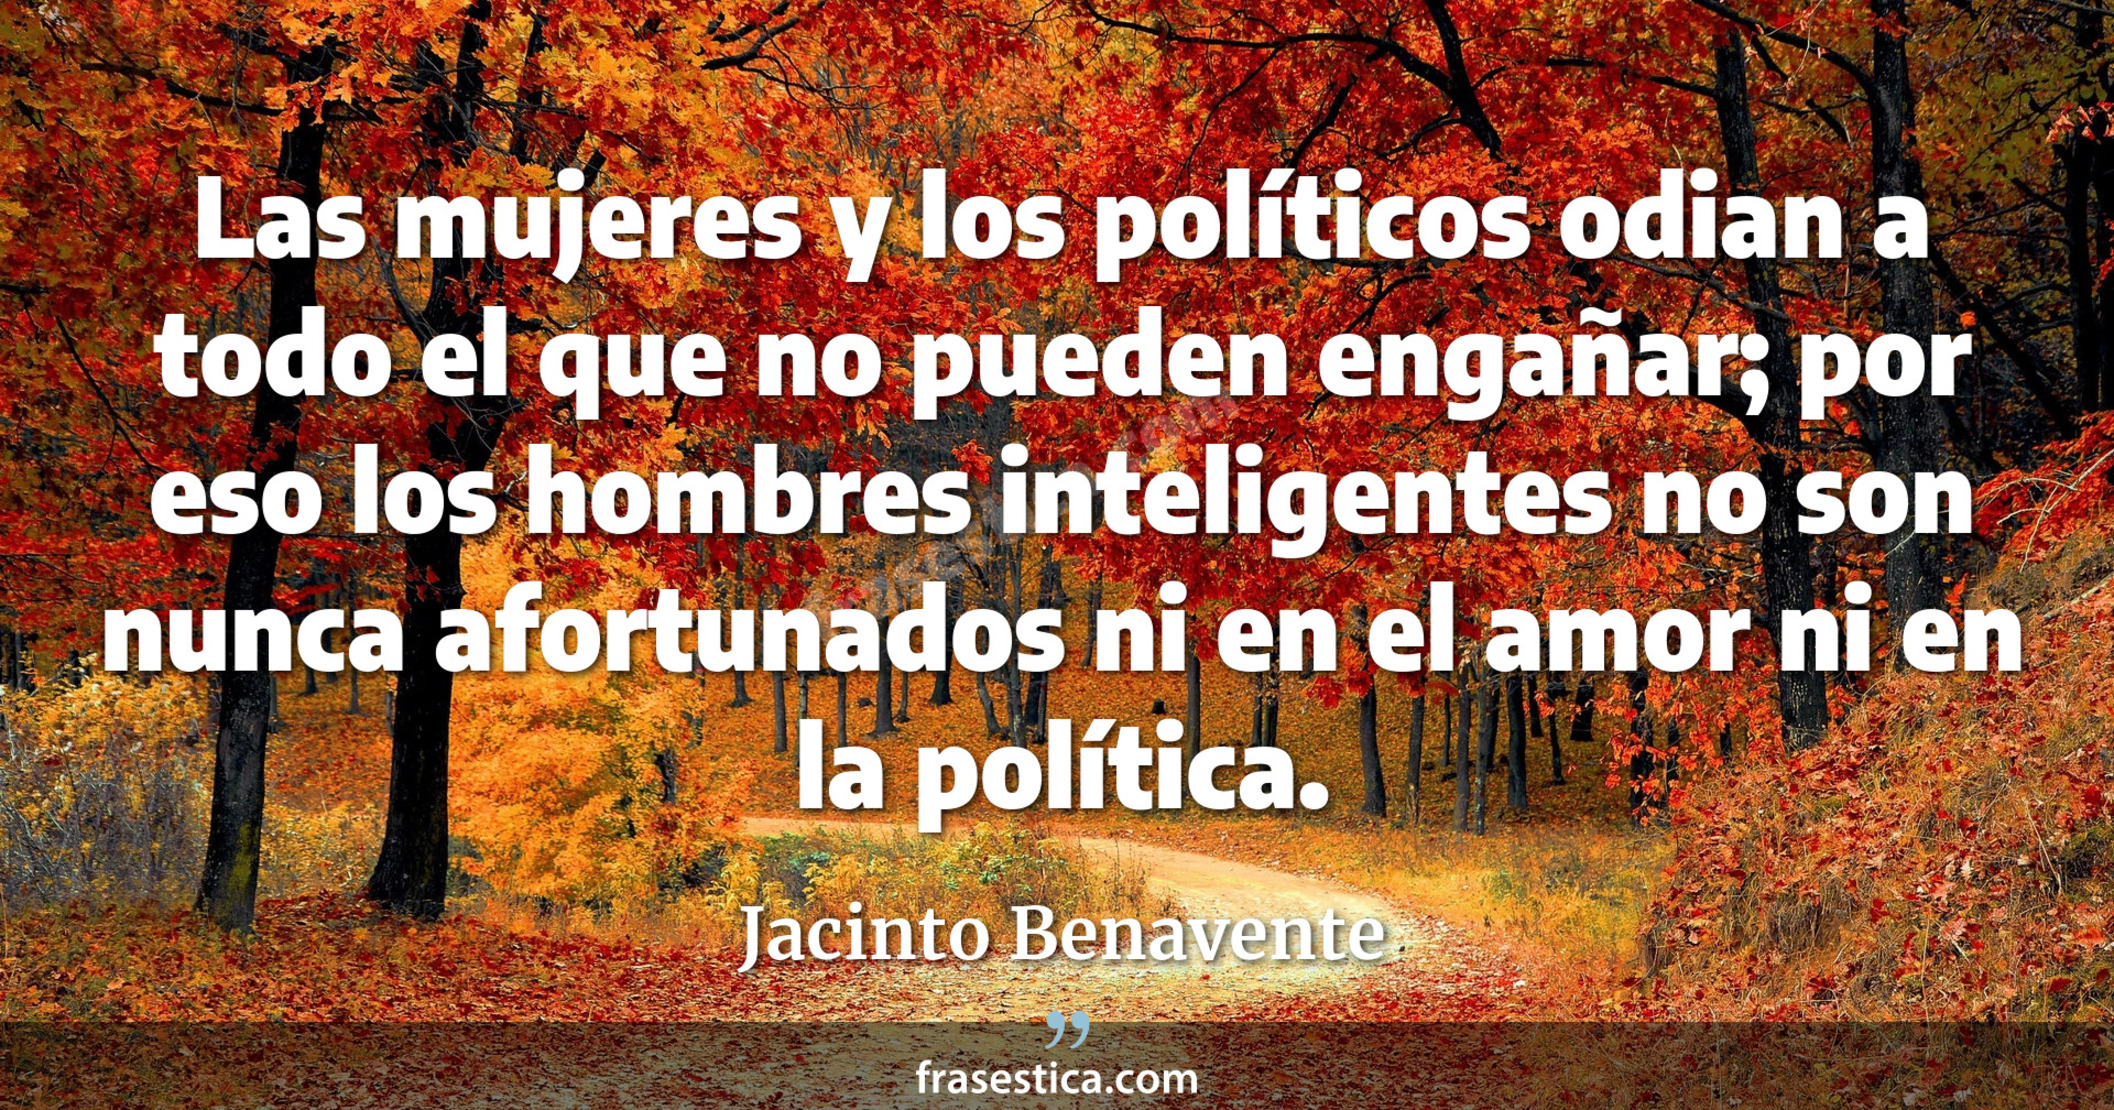 Las mujeres y los políticos odian a todo el que no pueden engañar; por eso los hombres inteligentes no son nunca afortunados ni en el amor ni en la política. - Jacinto Benavente